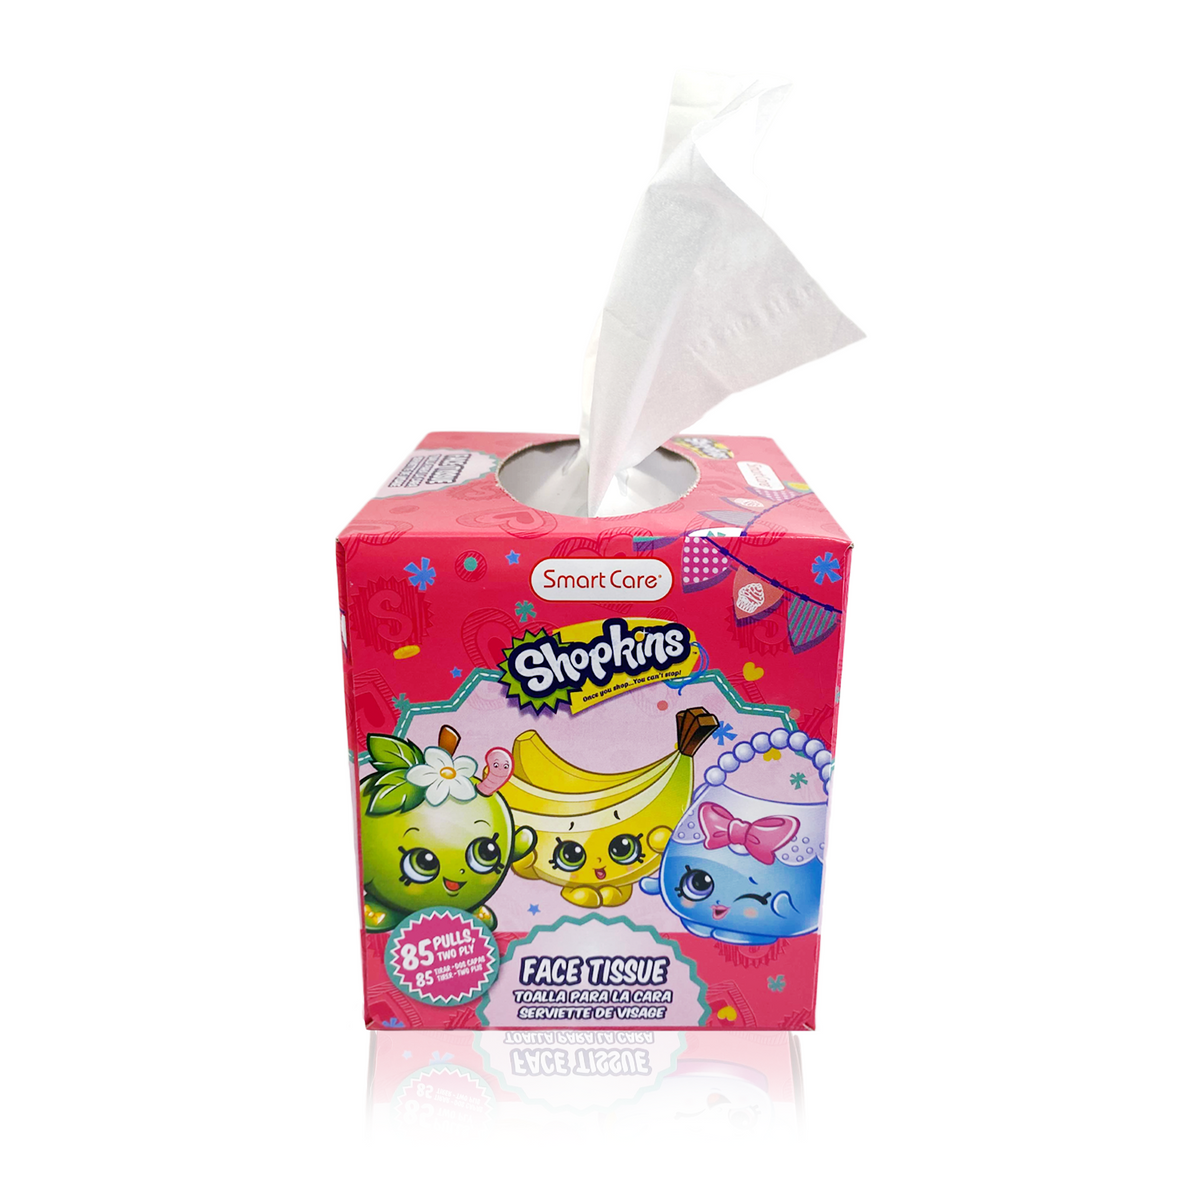 Shopkins Cube Tissue Box – Smart Care